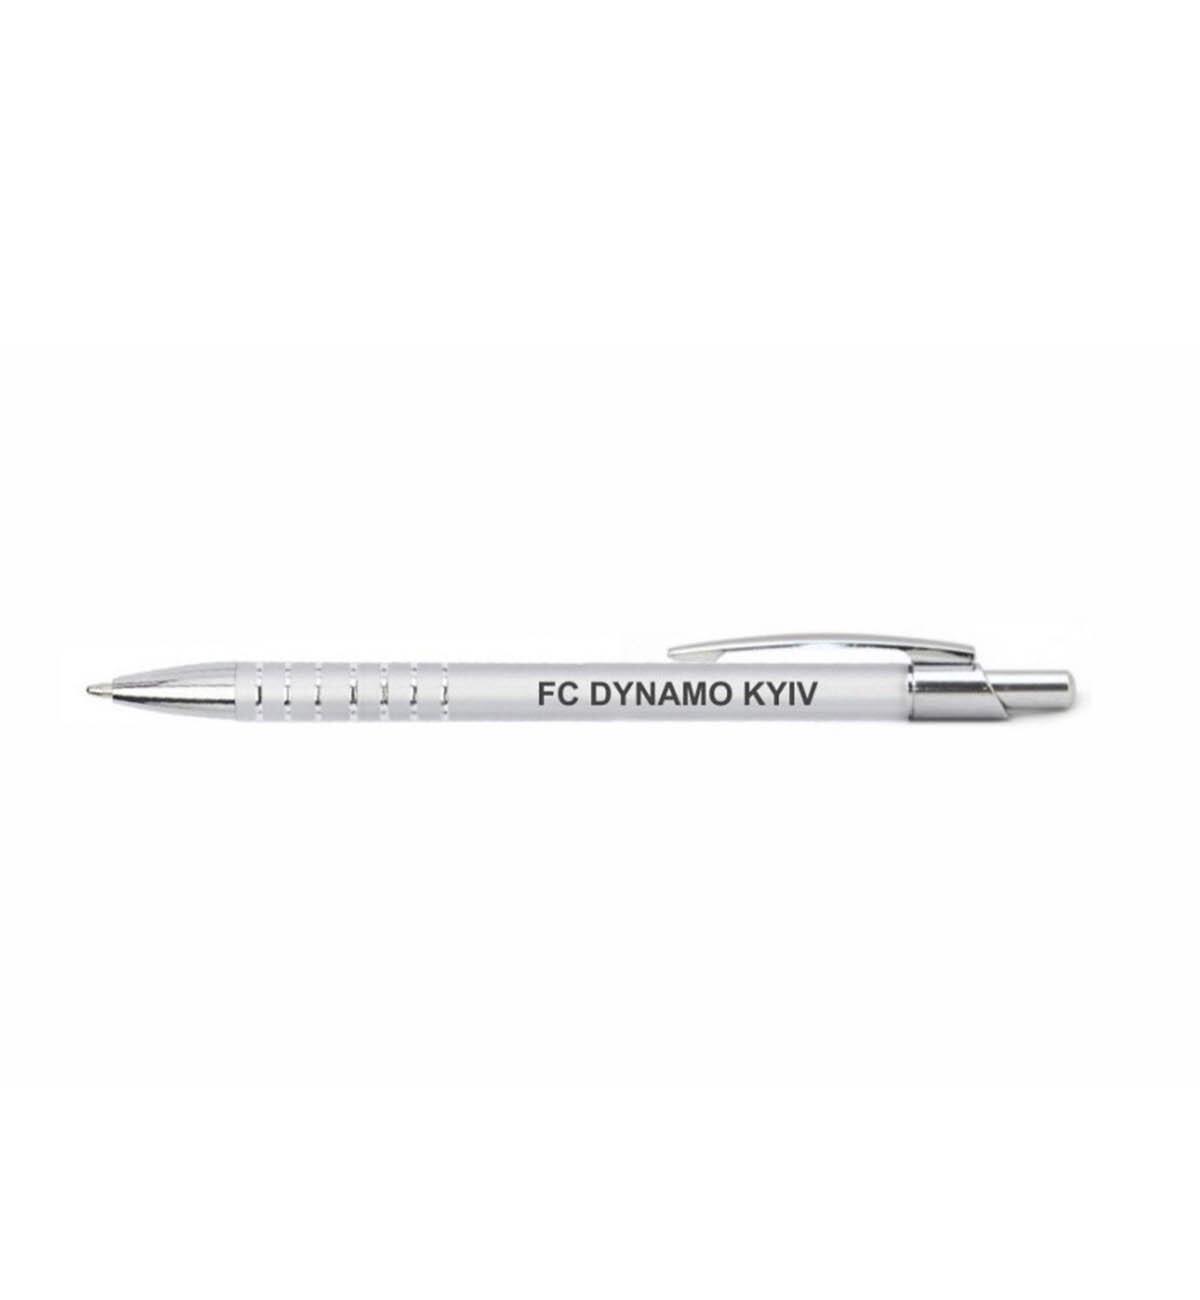 "FC Dynamo Kyiv" metal pen